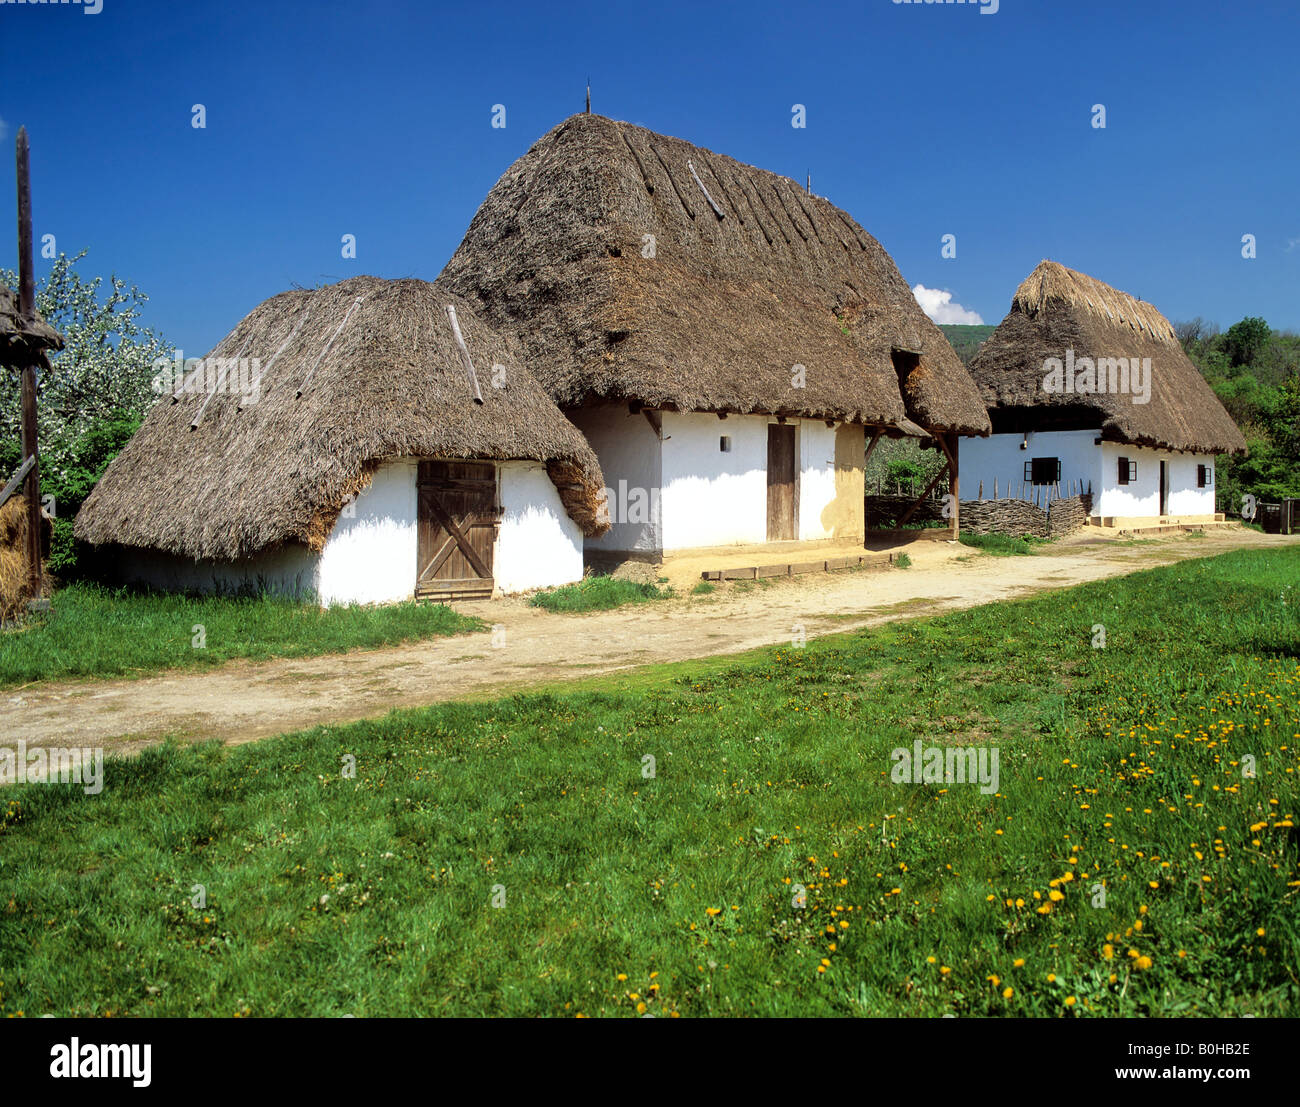 Csarda, farmhouse in the Puszta, Hungary Stock Photo